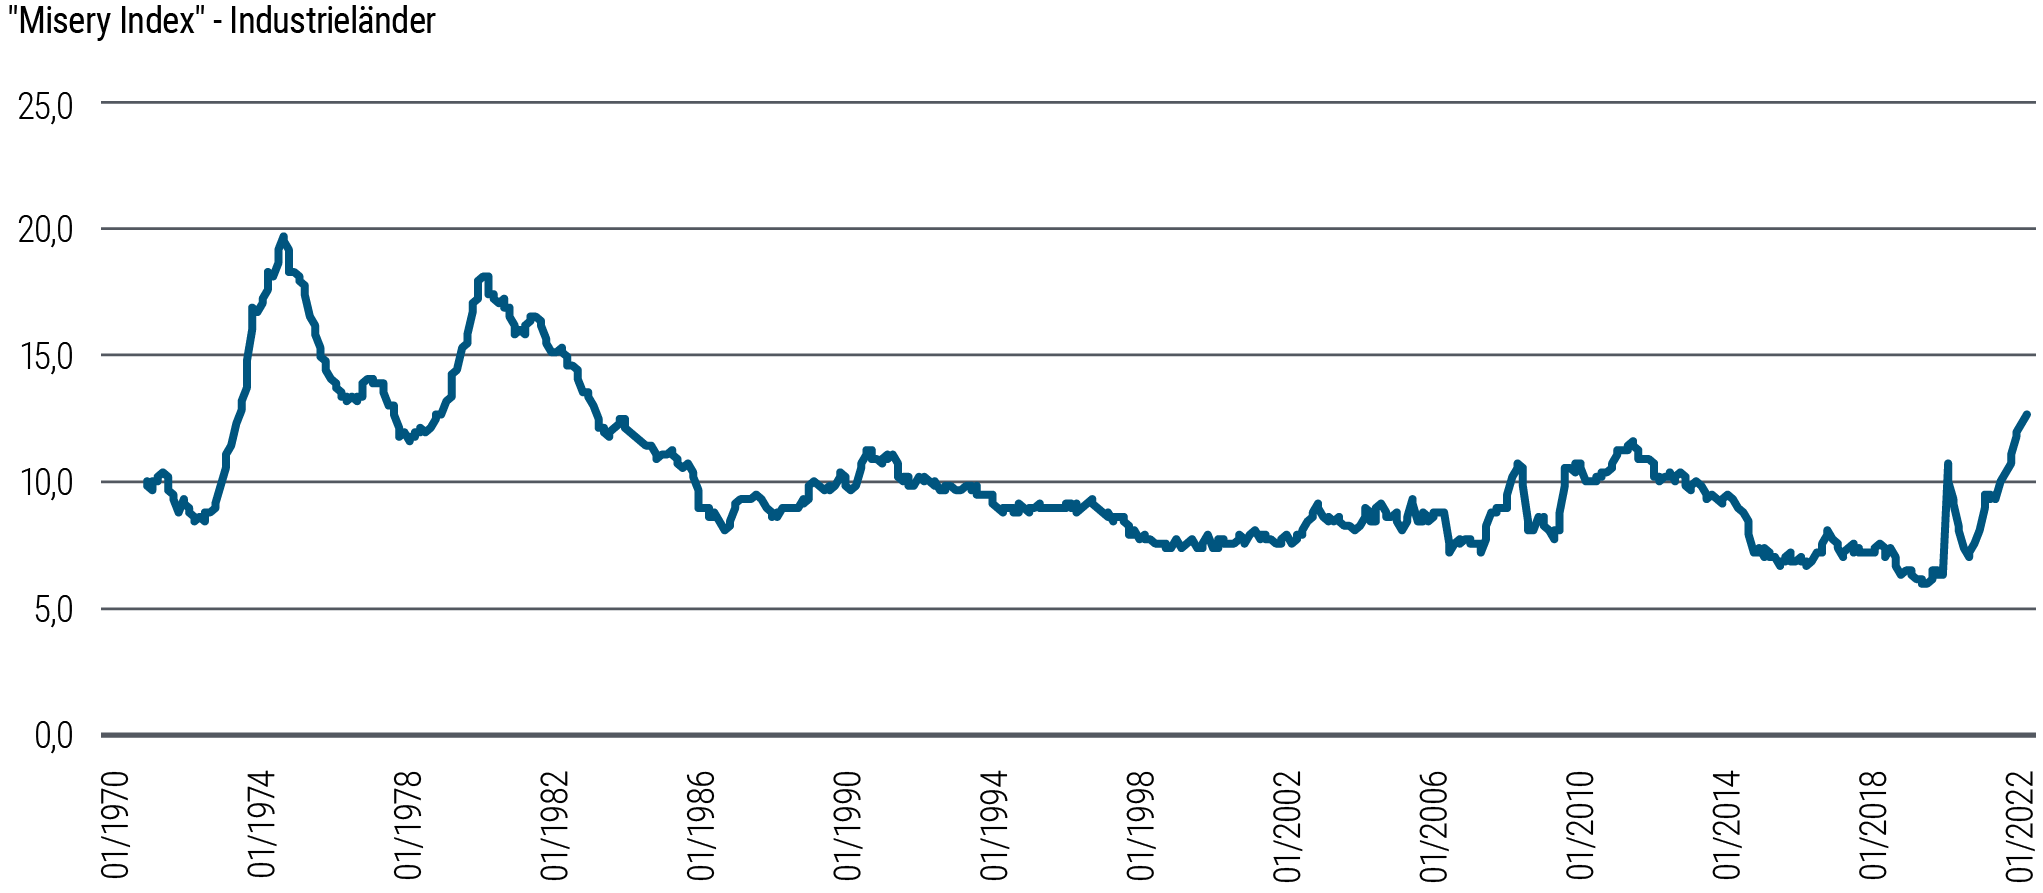 Ein Liniendiagramm des „Misery Index“ zeigt die Summe aus Inflationsrate und Arbeitslosenquote (beide einzeln gemessen in Prozent) in fünf Industrieländern von Januar 1970 bis September 2022. Zwei deutliche Spitzenwerte von 20 (1975) und 18 (1982) markieren Zeiträume mit signifikanten konjunkturellen/ökonomischen „Miseren“. Seit den frühen 1980er-Jahren tendierte die Kennzahl immer weiter nach unten und erreichte im November 2019 einen Tiefpunkt bei 6. Sie drehte dann wieder deutlich nach oben mit einem Spitzenwert um den Beginn der Covid-19-Pandemie. Es folgte ein kurzer Rückgang, ehe sie wieder zu steigen begann. Der „Misery Index“ erreichte im dritten Quartal 2022 fast den Wert von 13. 